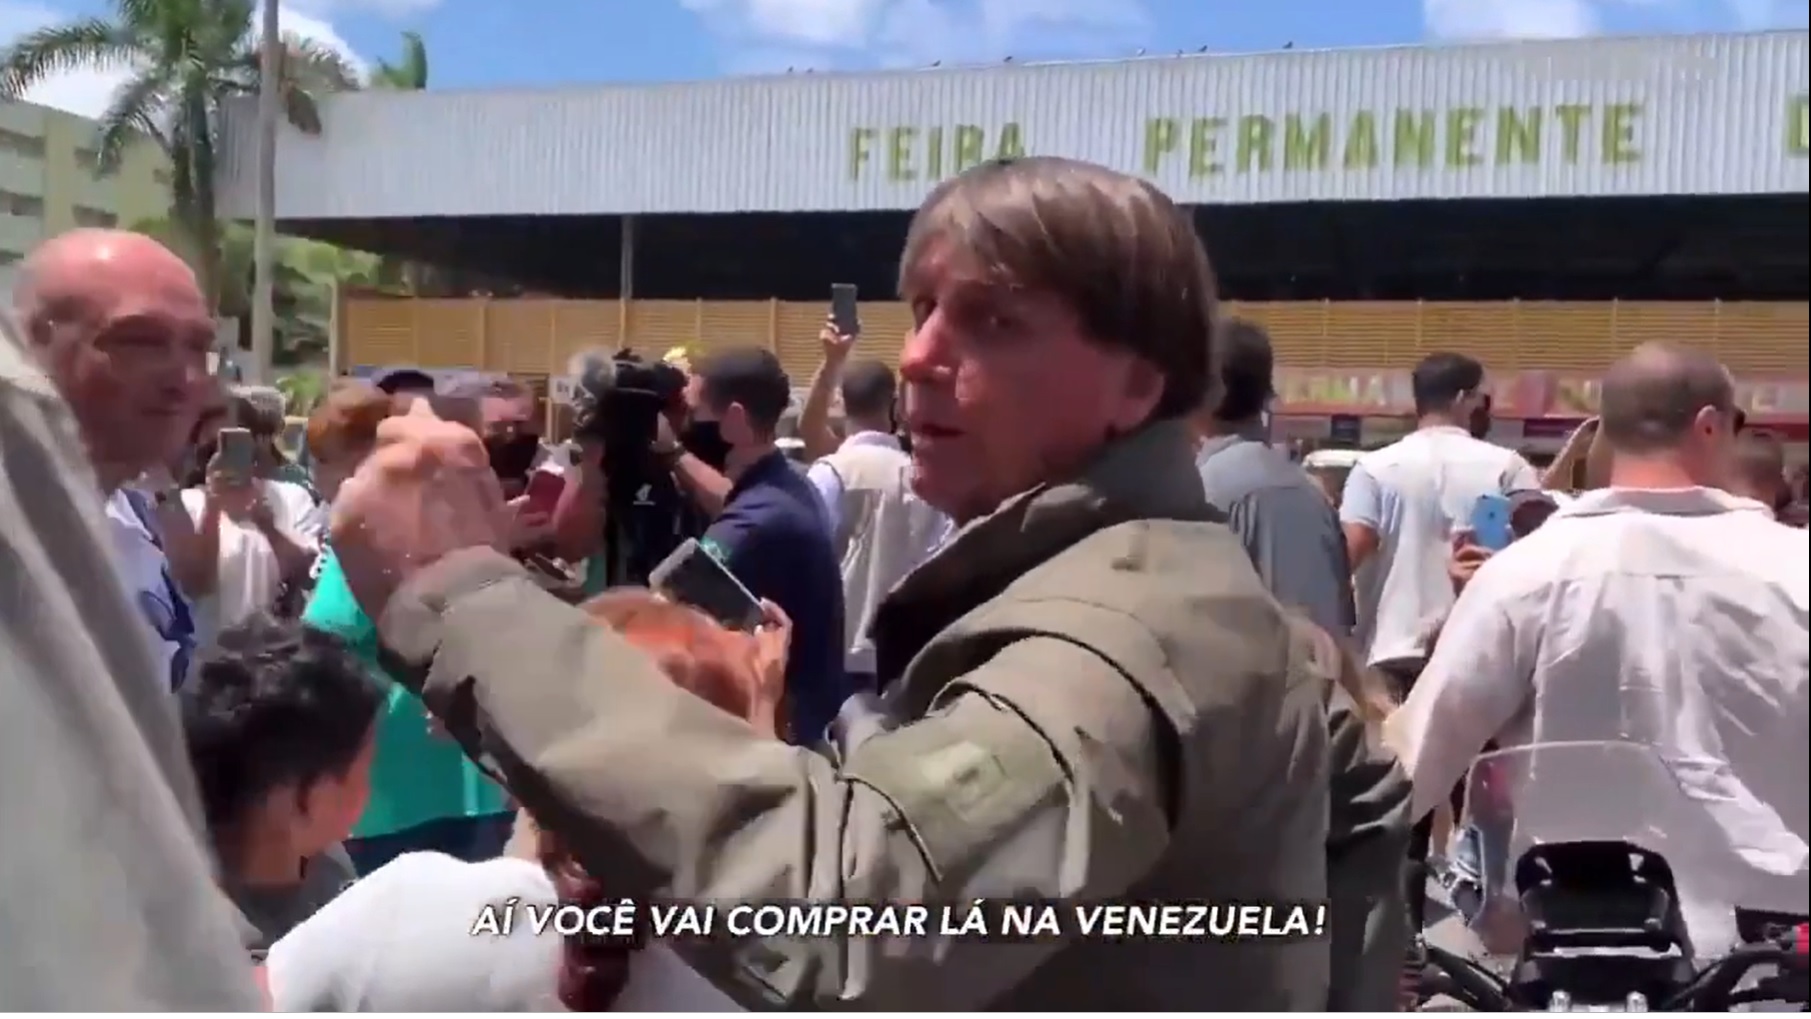 Bolsonaro em meio a apoiadores na feira permanete do Cruzeiro,DF (foto: reprodução)